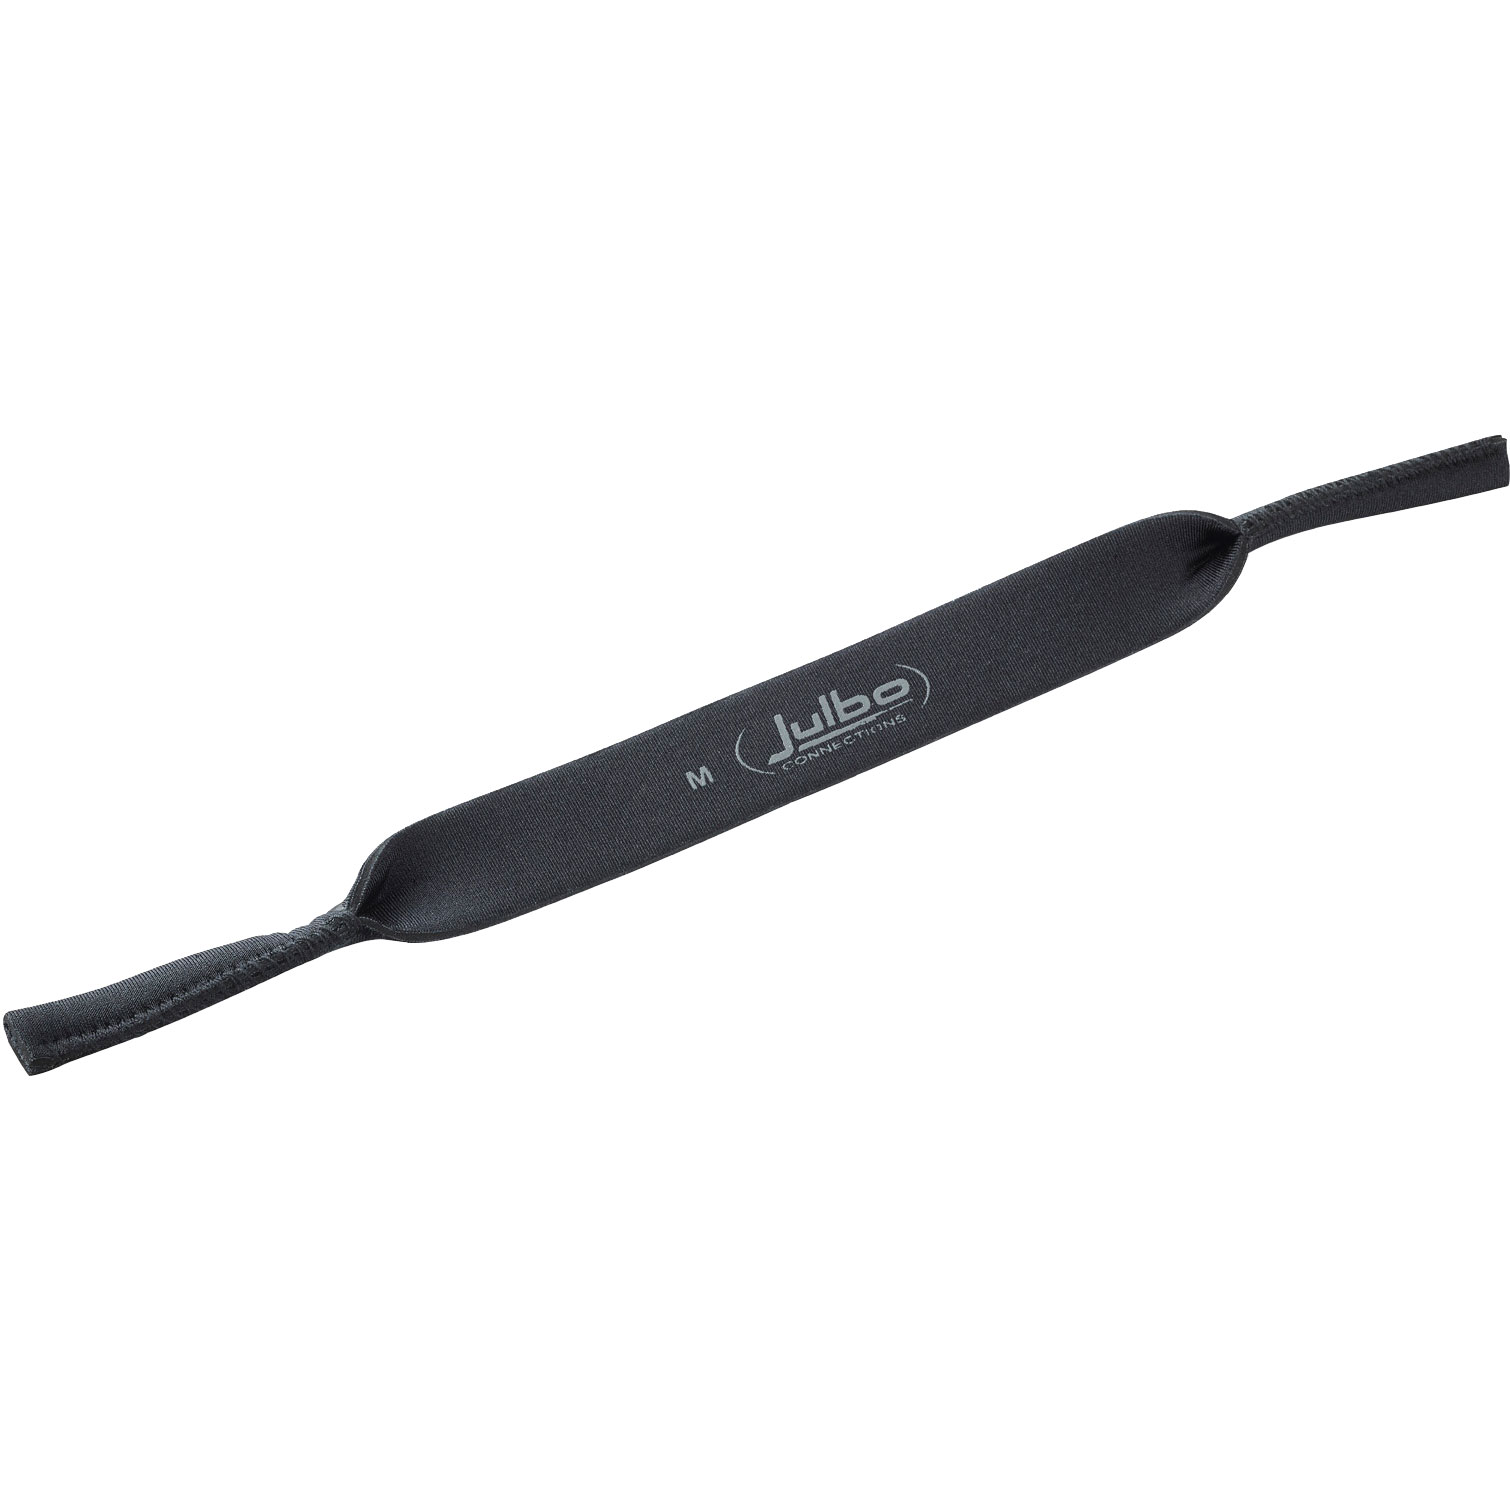 Productfoto van Julbo Neopren Strap For Glasses - M - black